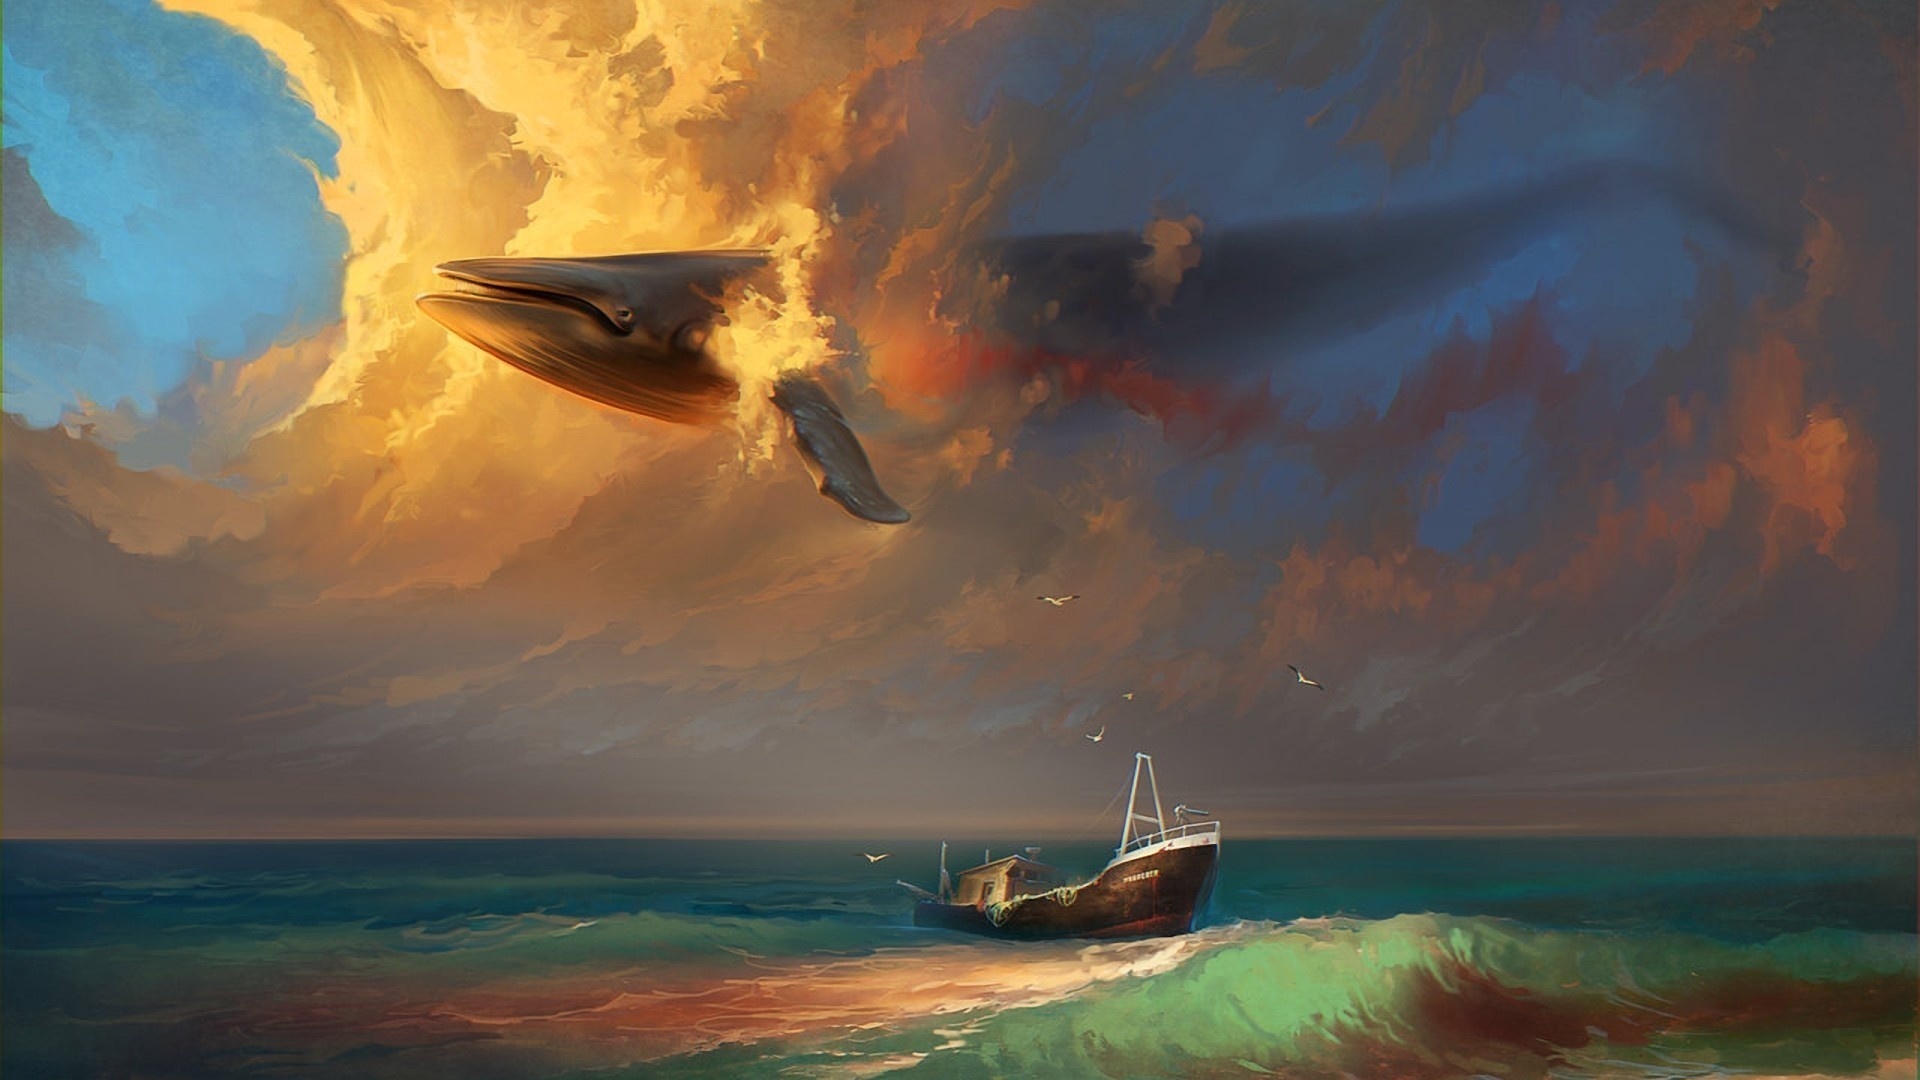 Fantaisie Whale Surrealism Trippy Surr El Navire Fond D Cran